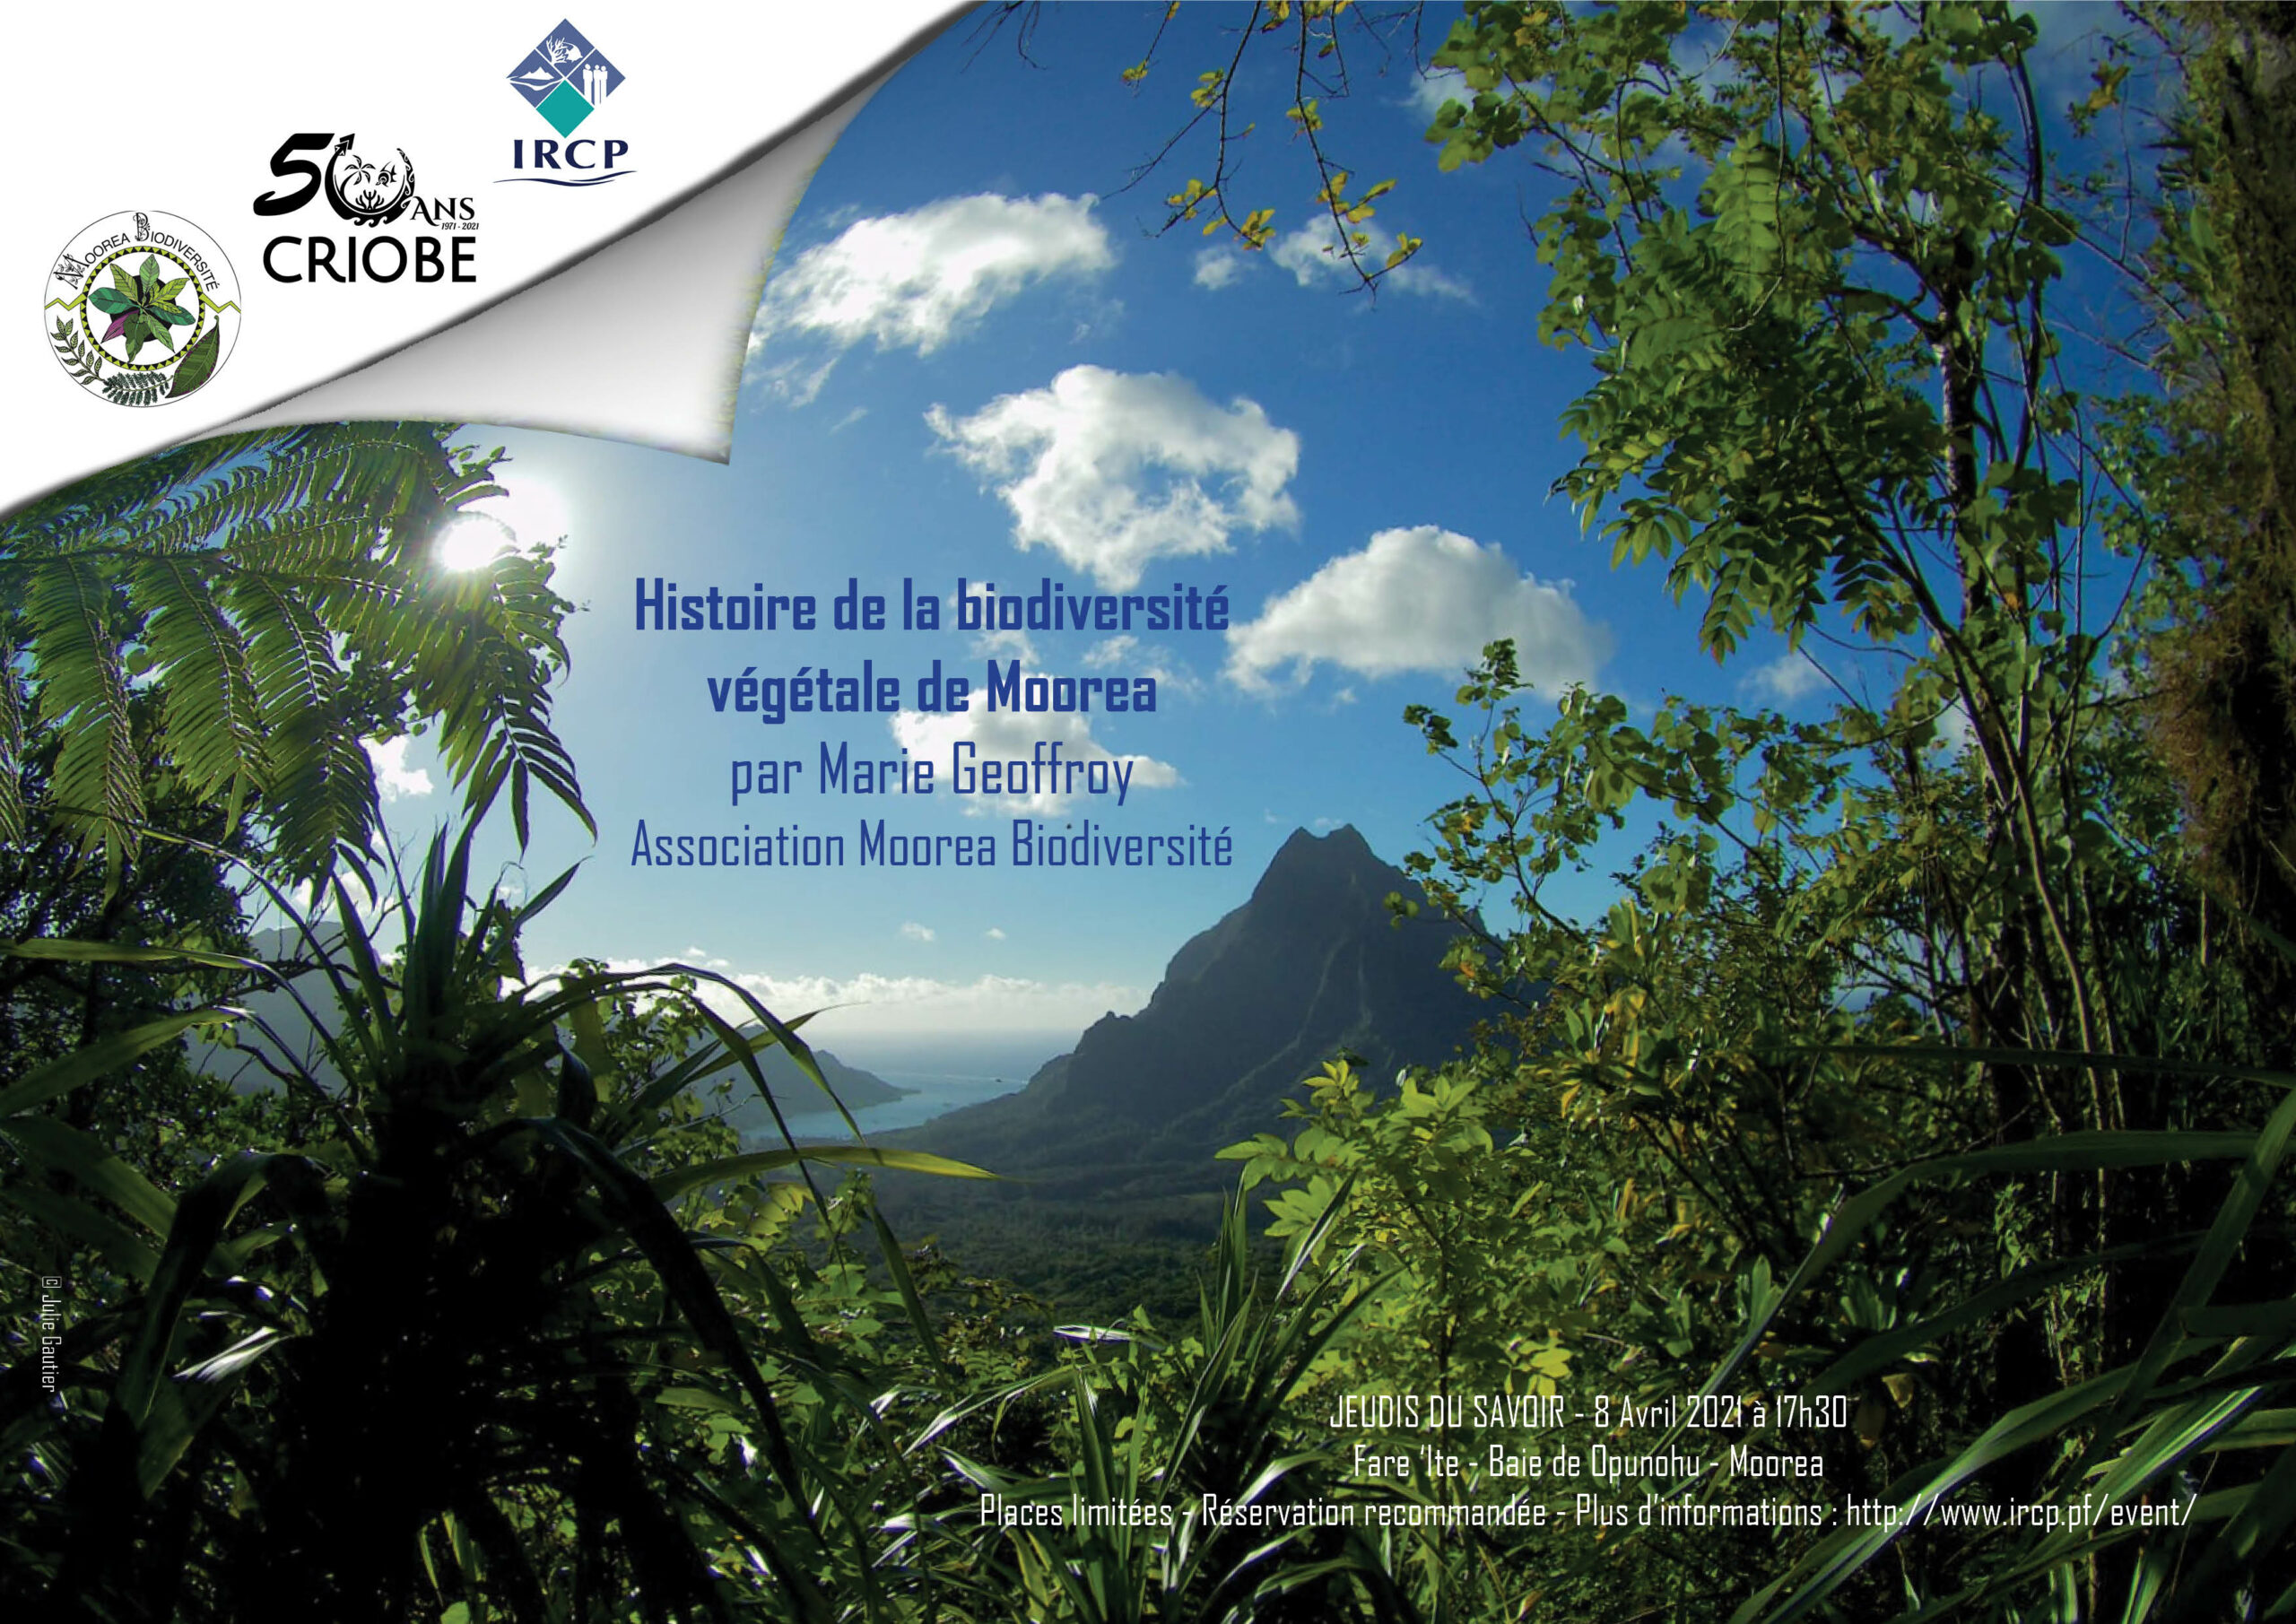 Les Jeudis du Savoir | Histoire de la biodiversité végétale de Moorea | Criobe